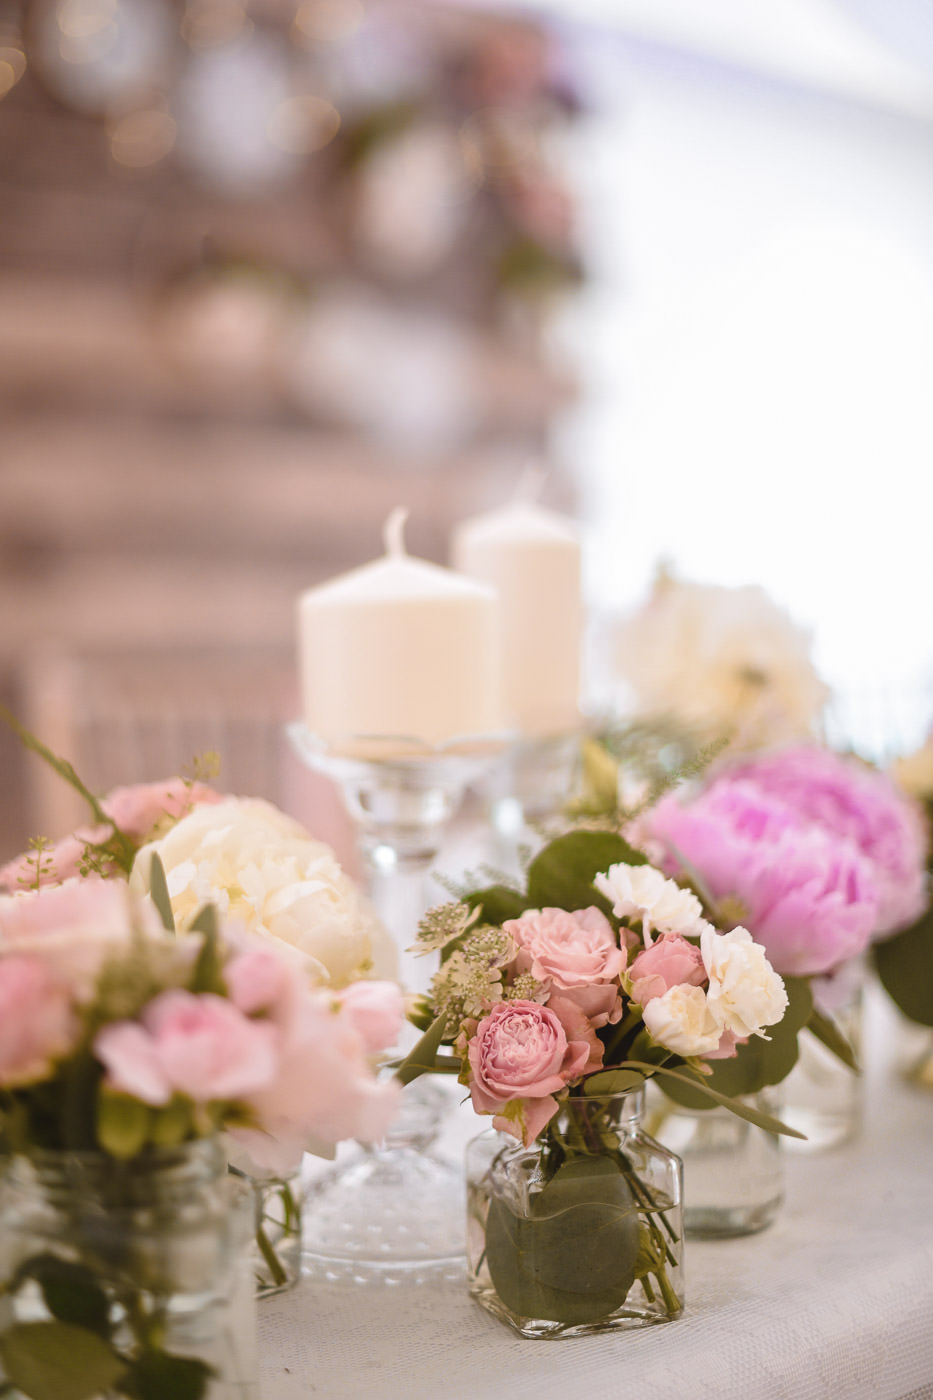 Susan&Sis decor – svadobna vyzdoba, dekorovanie- svadba v bielom stane- ruzova jemna vyzdoba, ruze, vela kvetov, ruzove stuhy